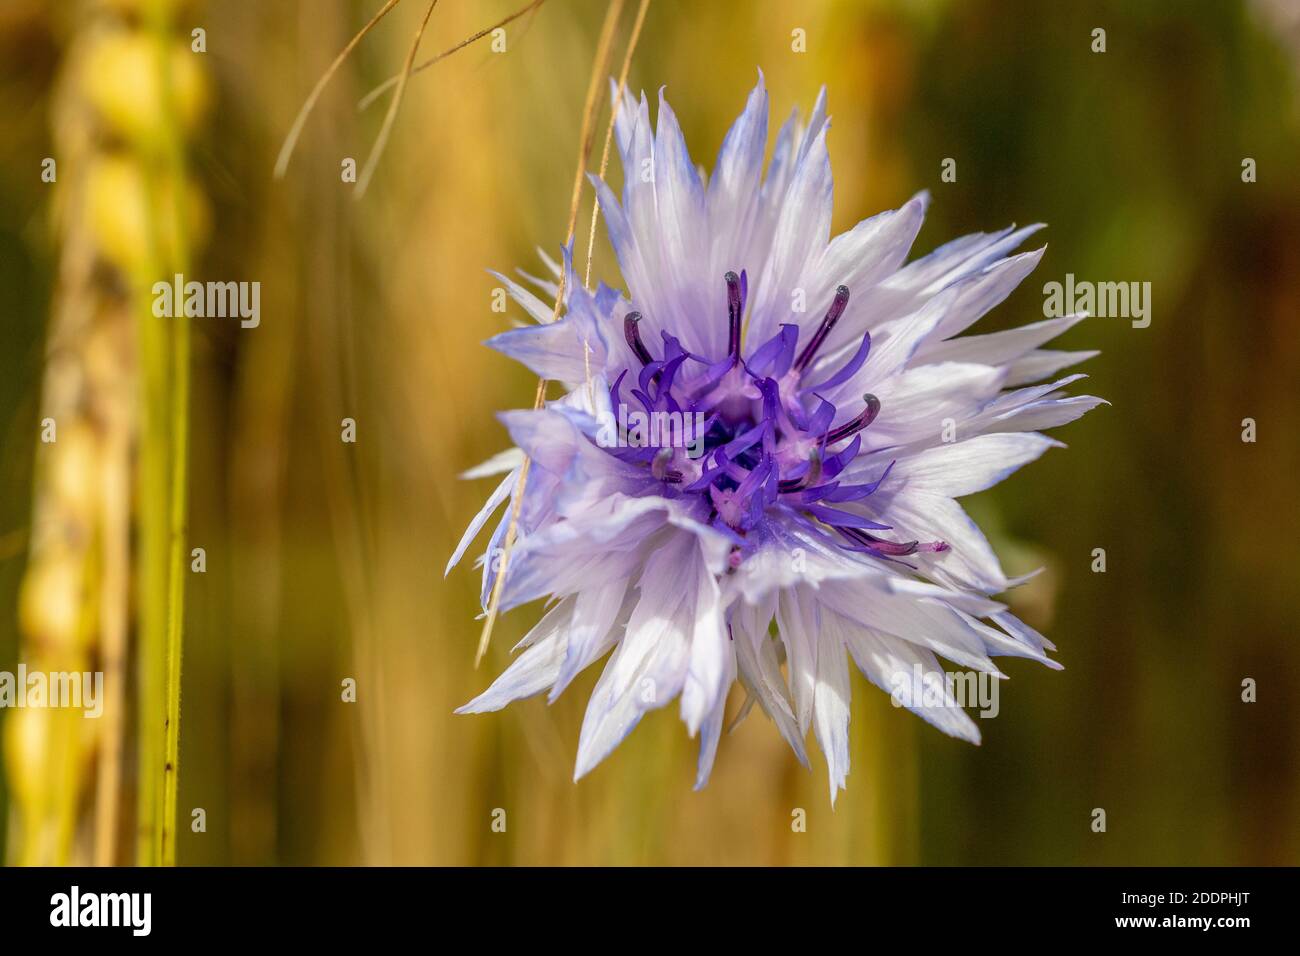 Bleuet, fleur de maïs (Centaurea cyanus), avec fleurs blanches et bleues, Allemagne, Bade-Wurtemberg Banque D'Images